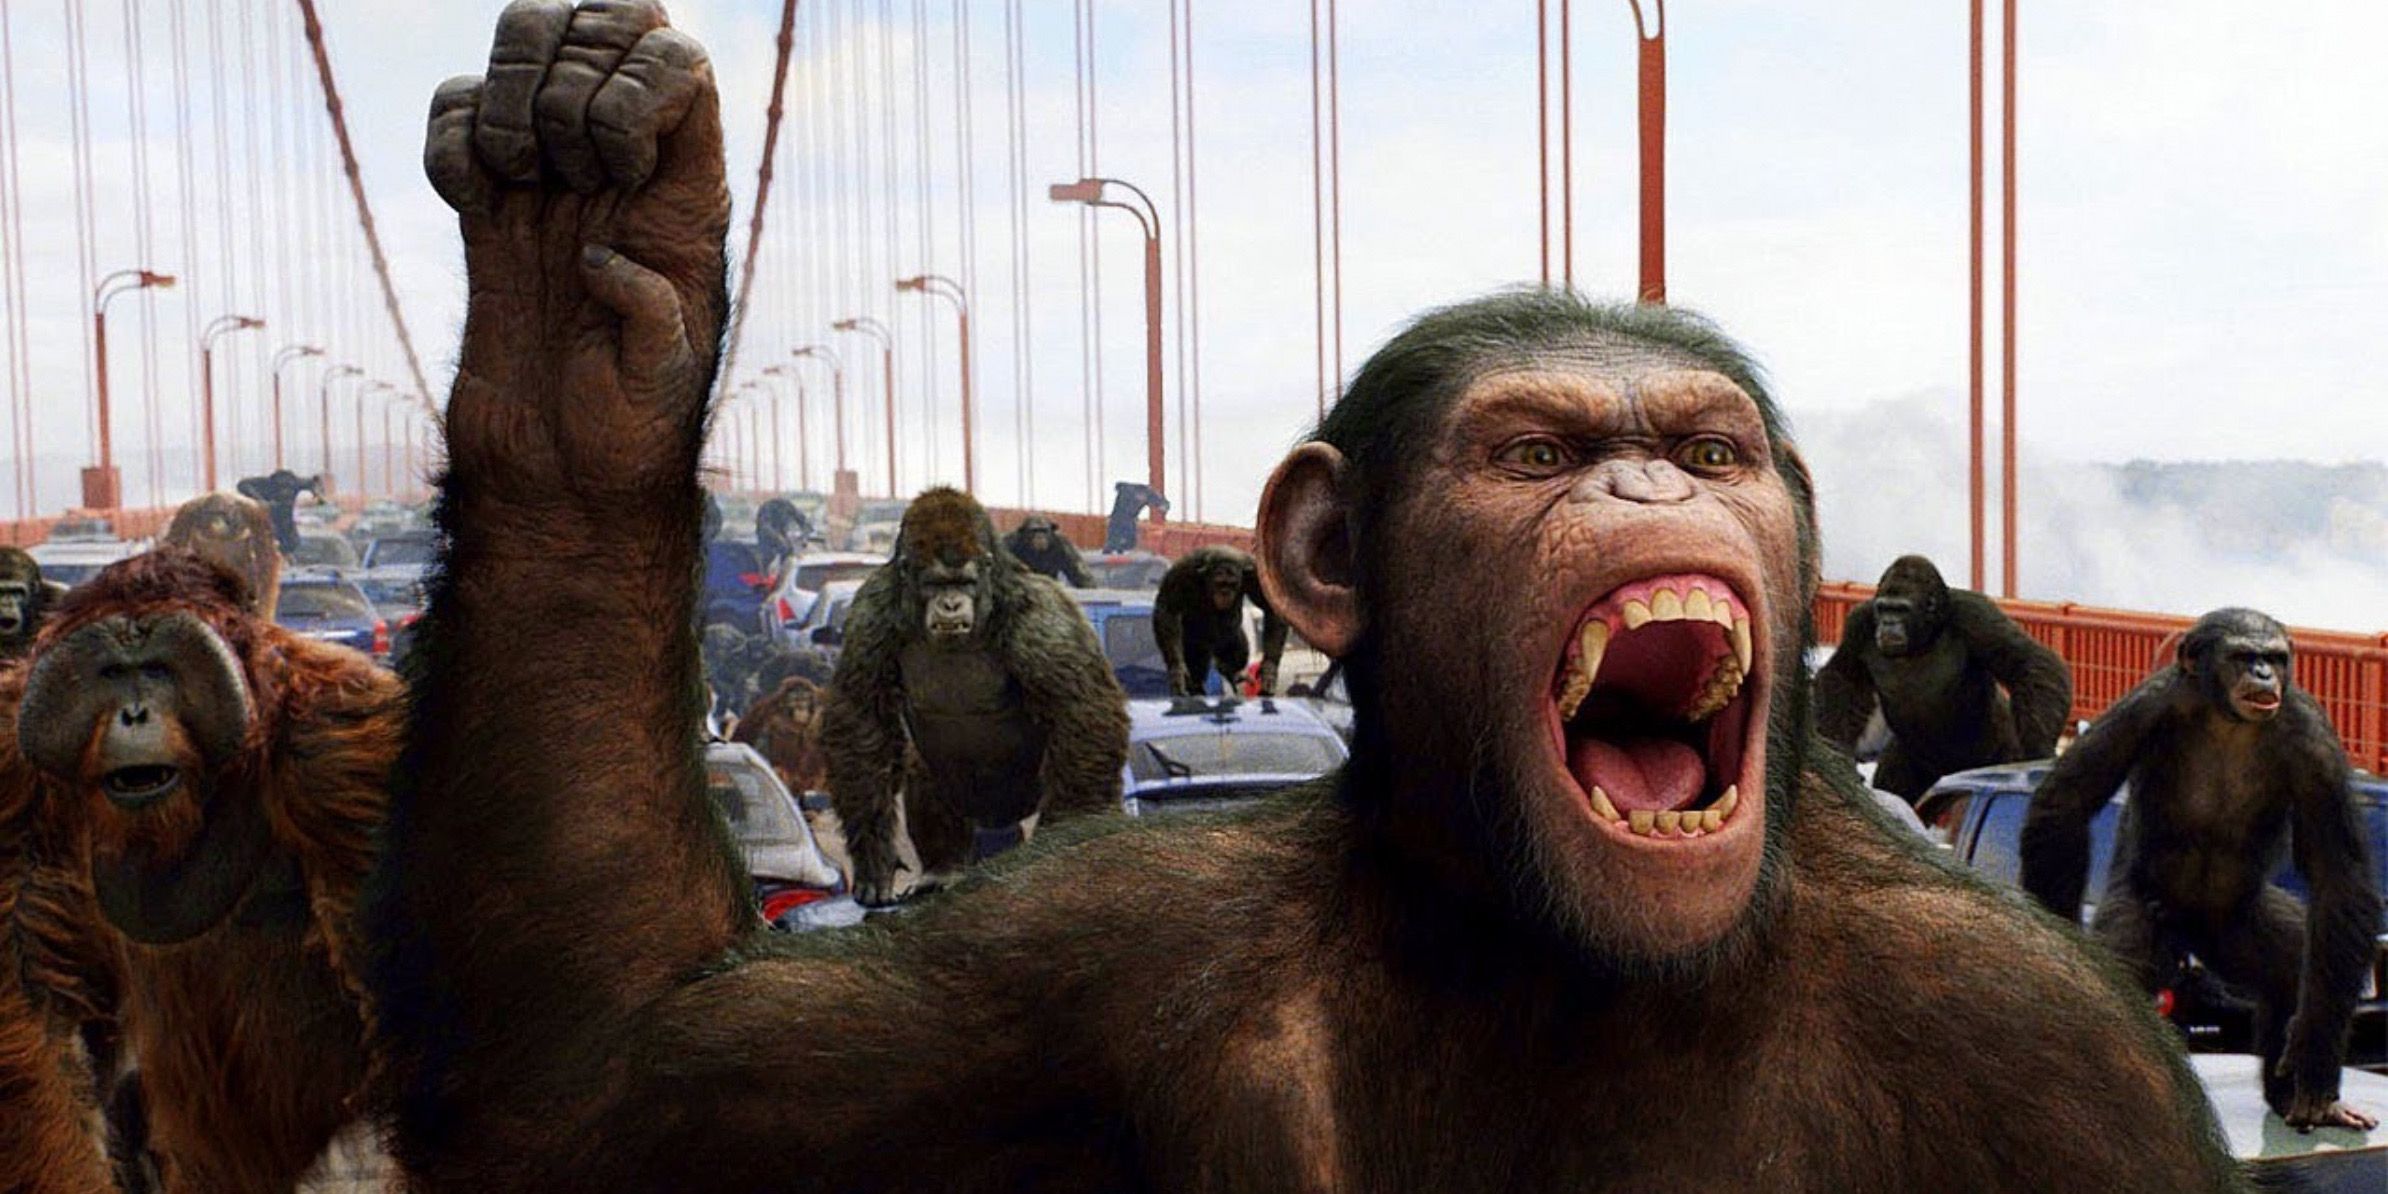 Планета обезьян: почему люди не умеют говорить